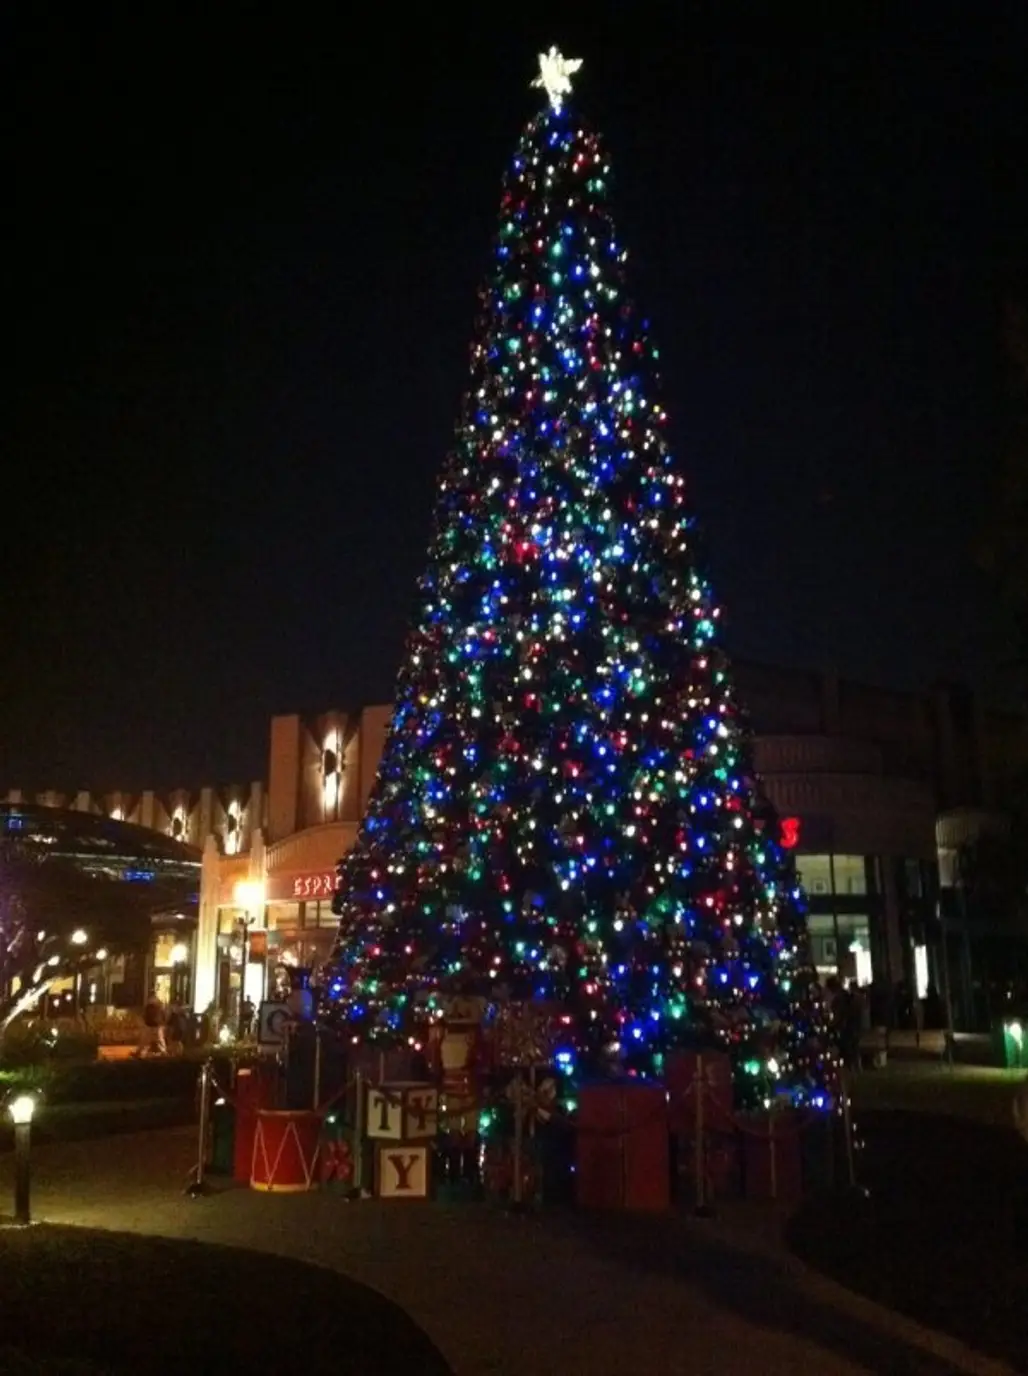 The Christmas Tree Lighting